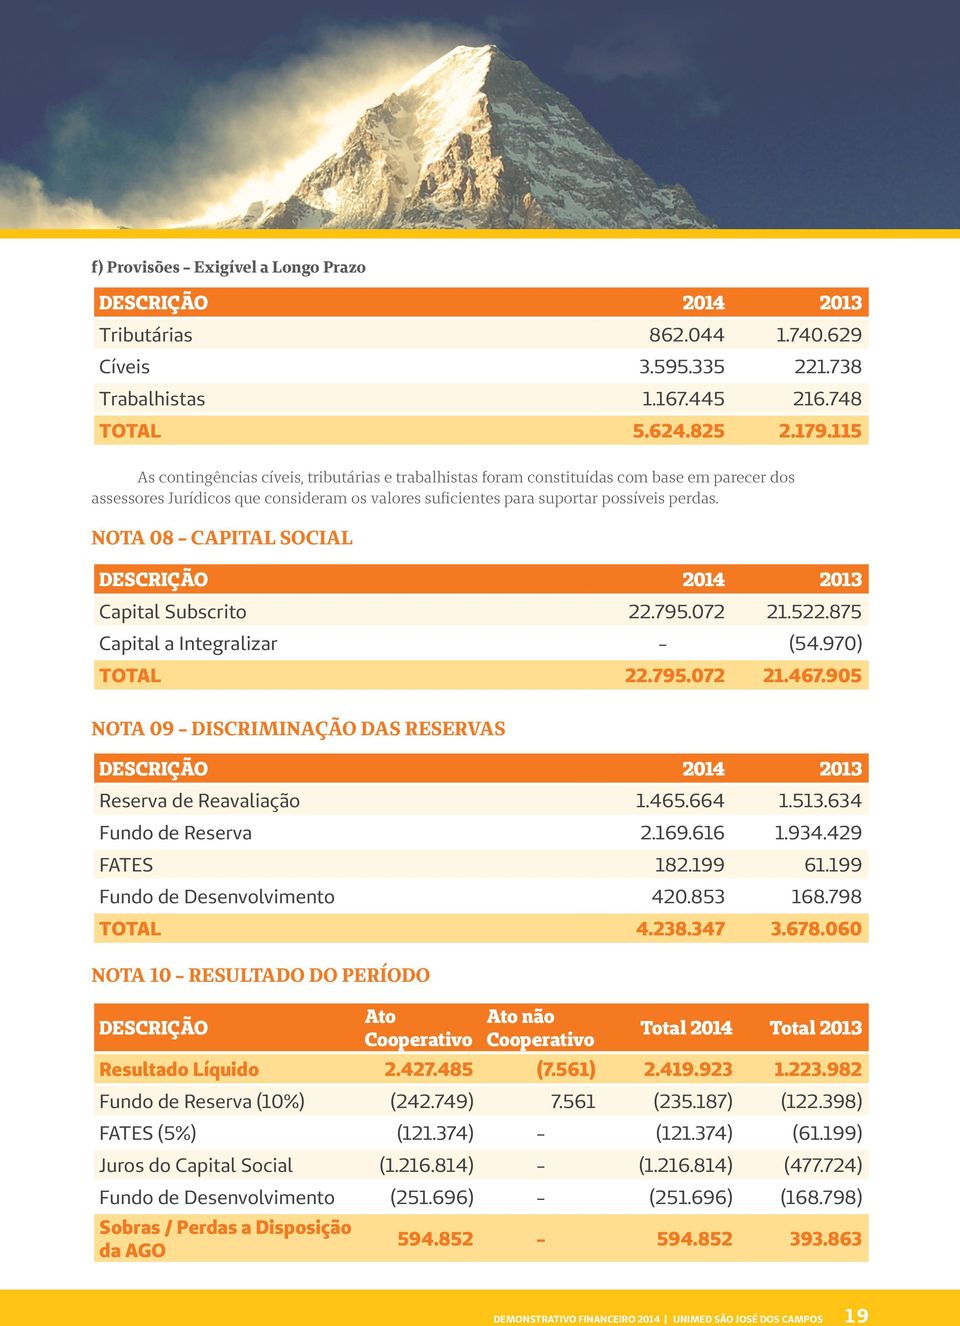 NOTA 08 - CAPITAL SOCIAL DESCRIÇÃO 2014 2013 Capital Subscrito 22.795.072 21.522.875 Capital a Integralizar - (54.970) TOTAL 22.795.072 21.467.